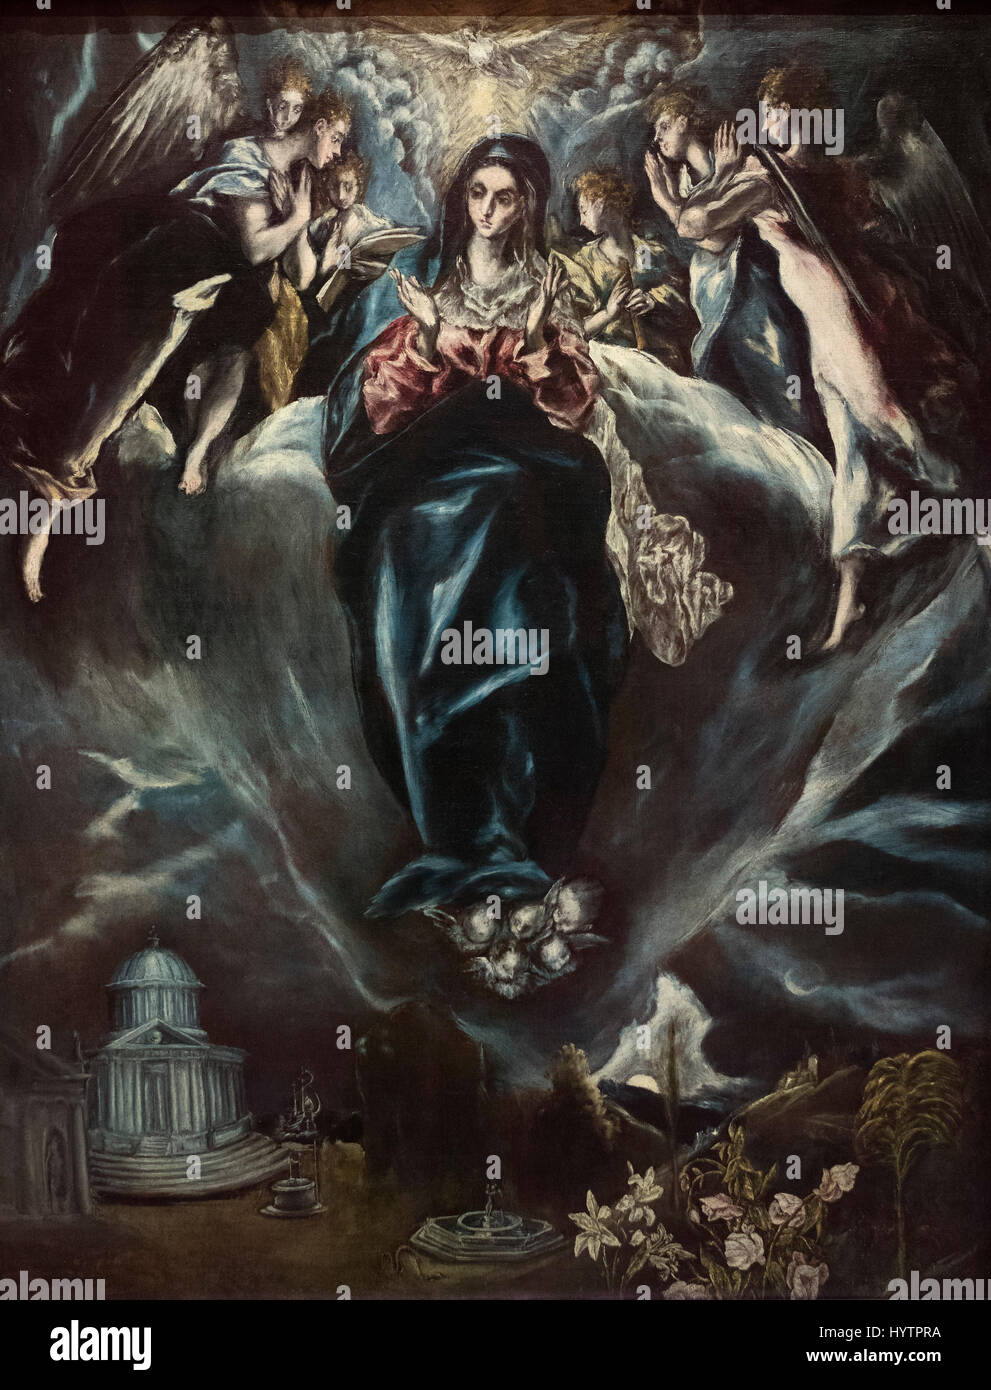 Doménikos Theotokópoulos - El Greco (ca. 1541-1614), l'Immacolata Concezione, 1607-1613. La Inmaculada Concepción. Foto Stock